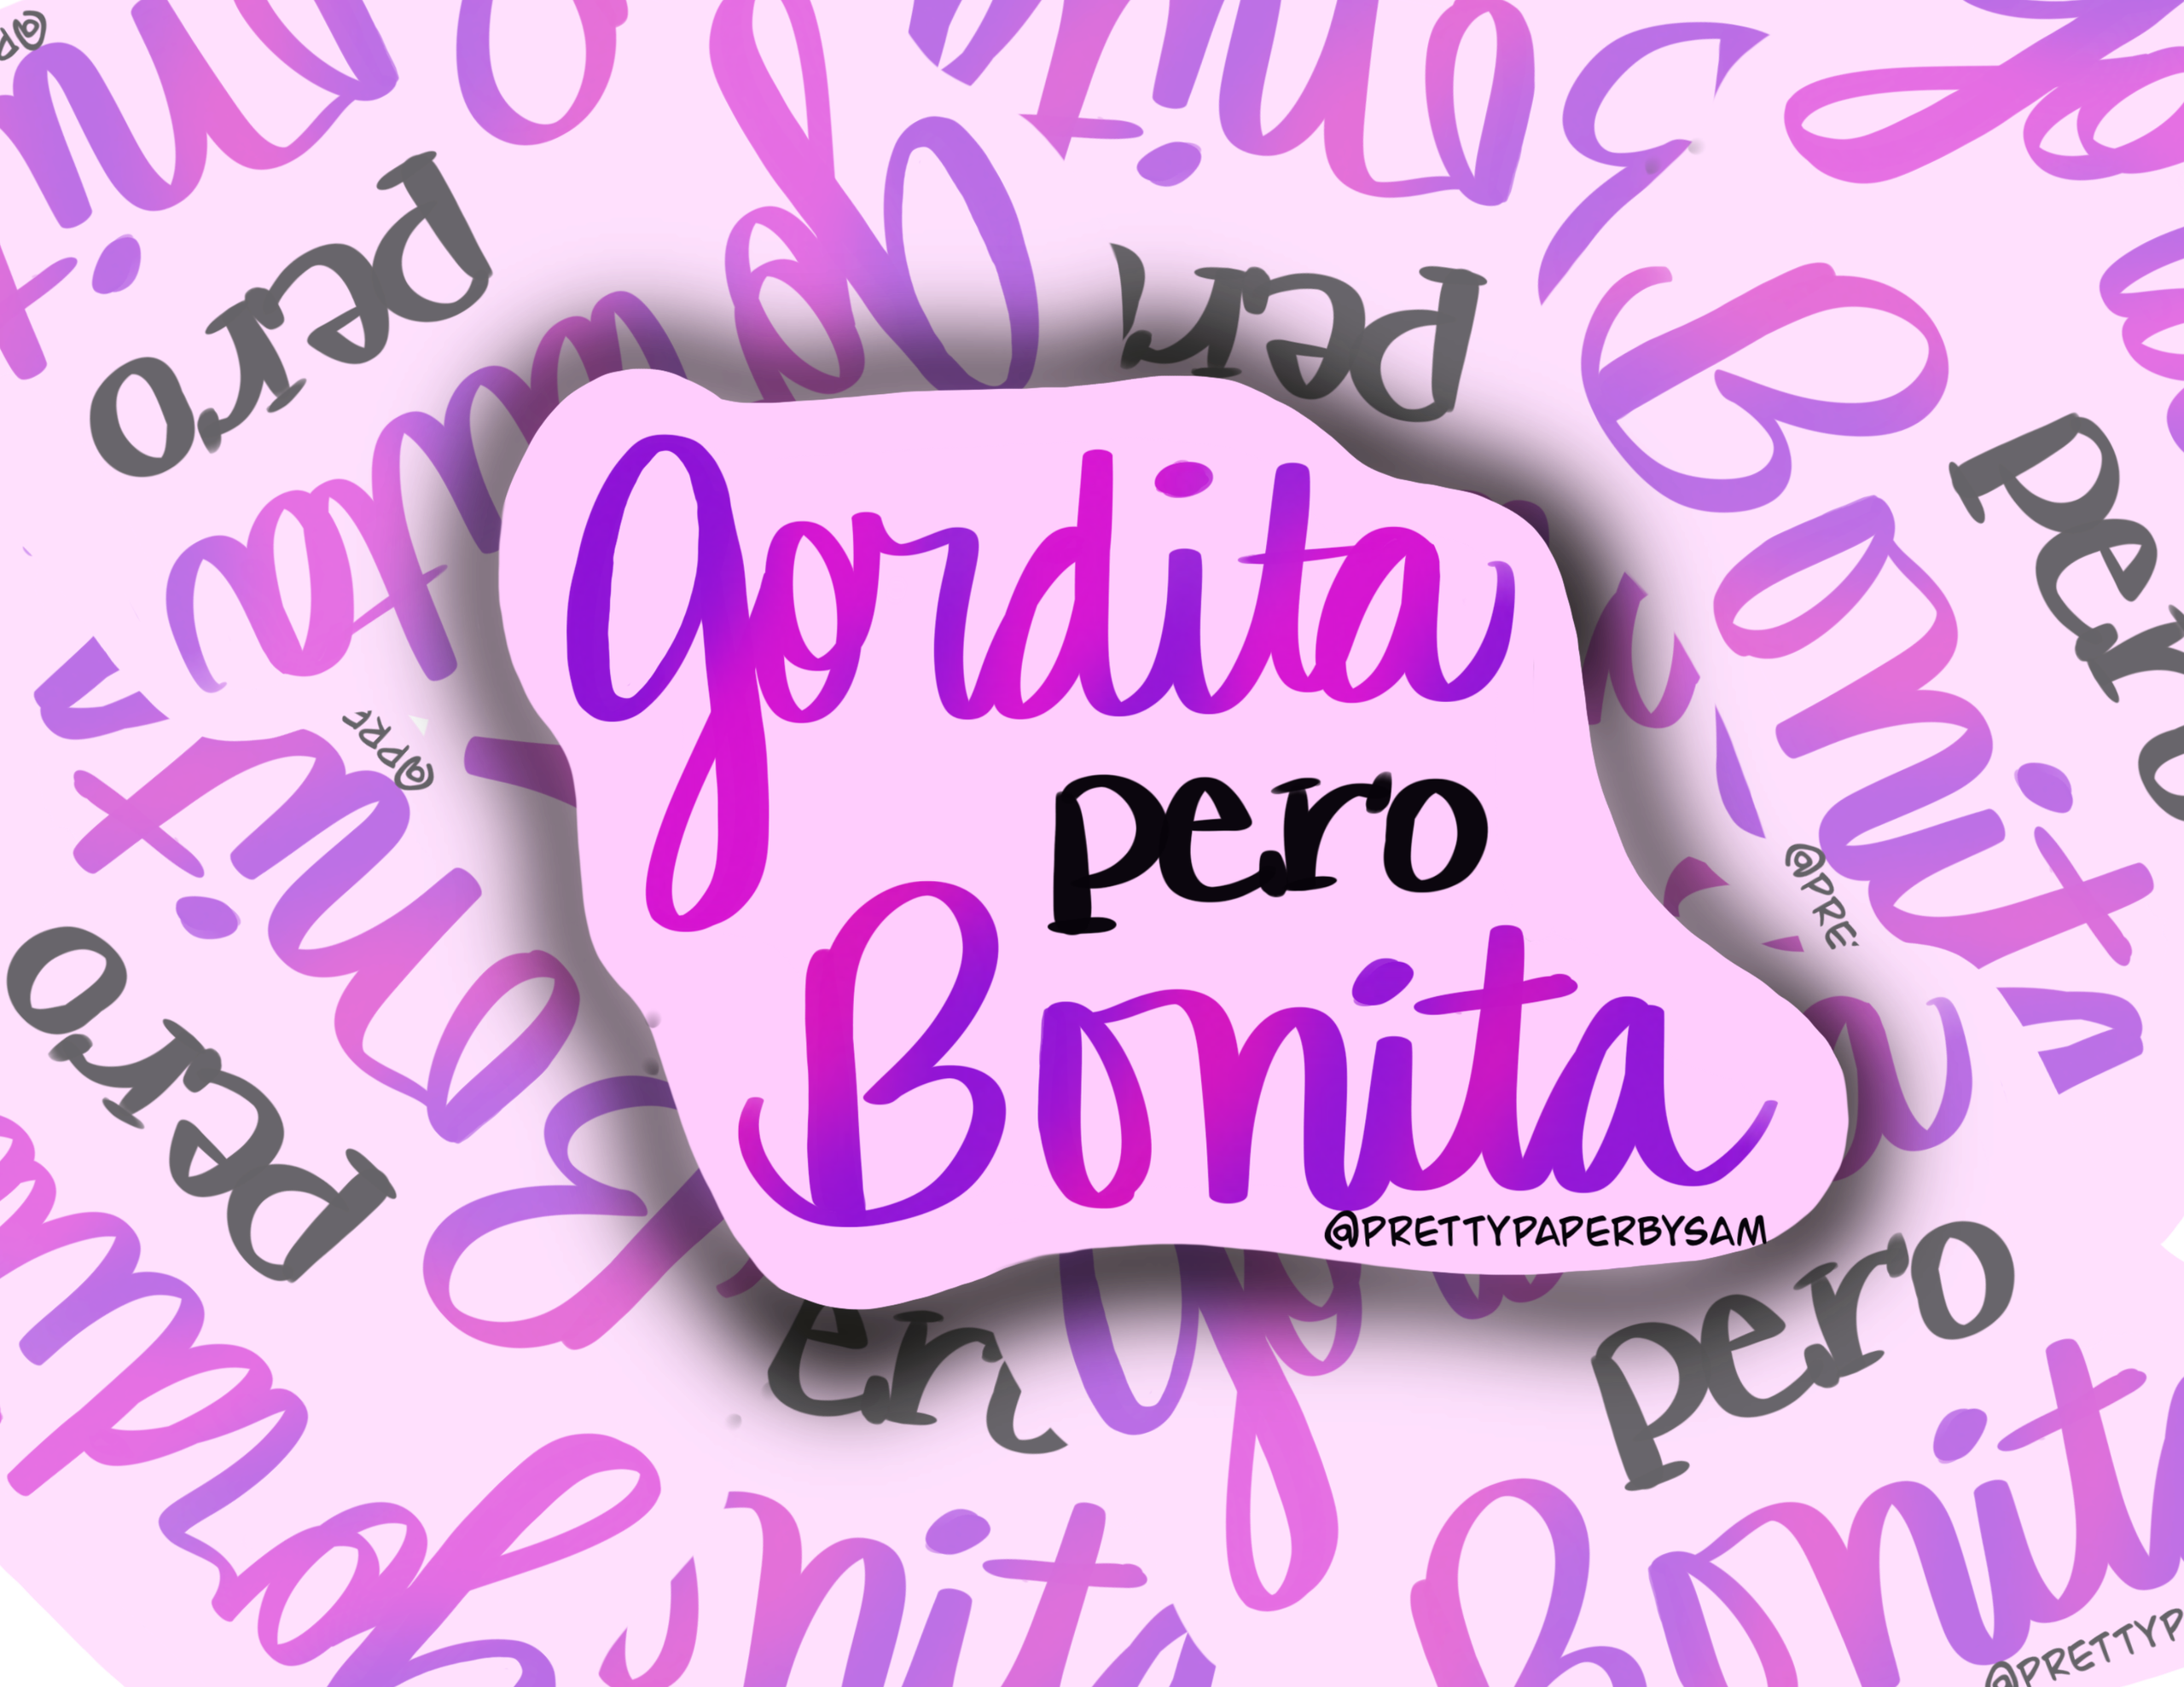 Gordita Pero Cute Notepad Latina Stationery Latina Body Positive